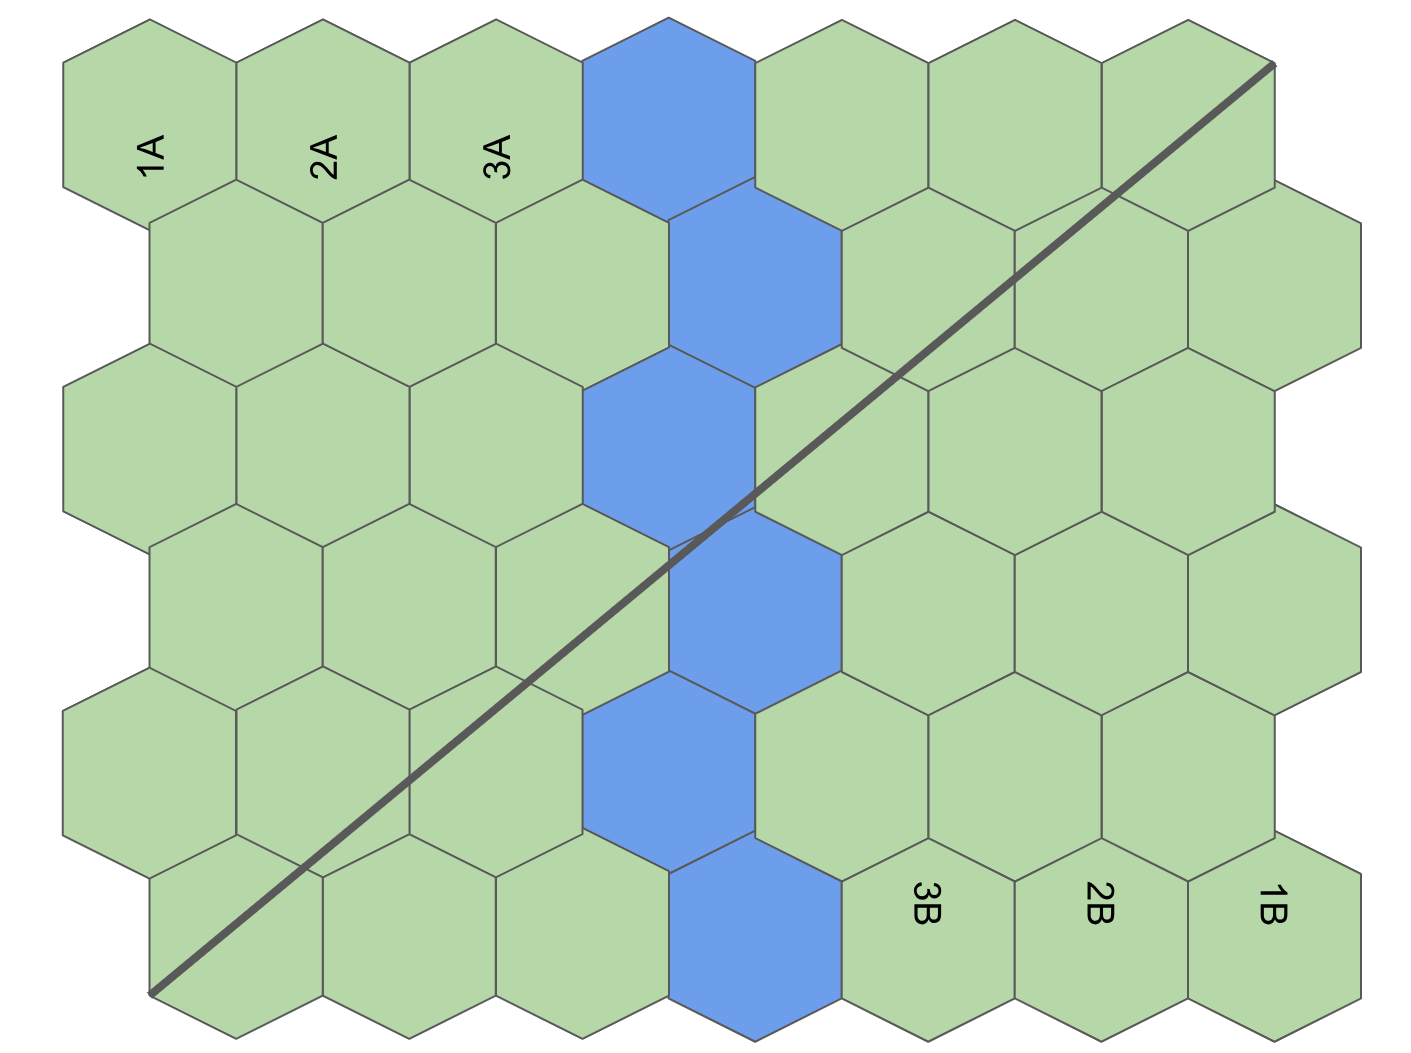 Ejemplos de movimiento y disposición del tablero con cuadrados y hexágonos.